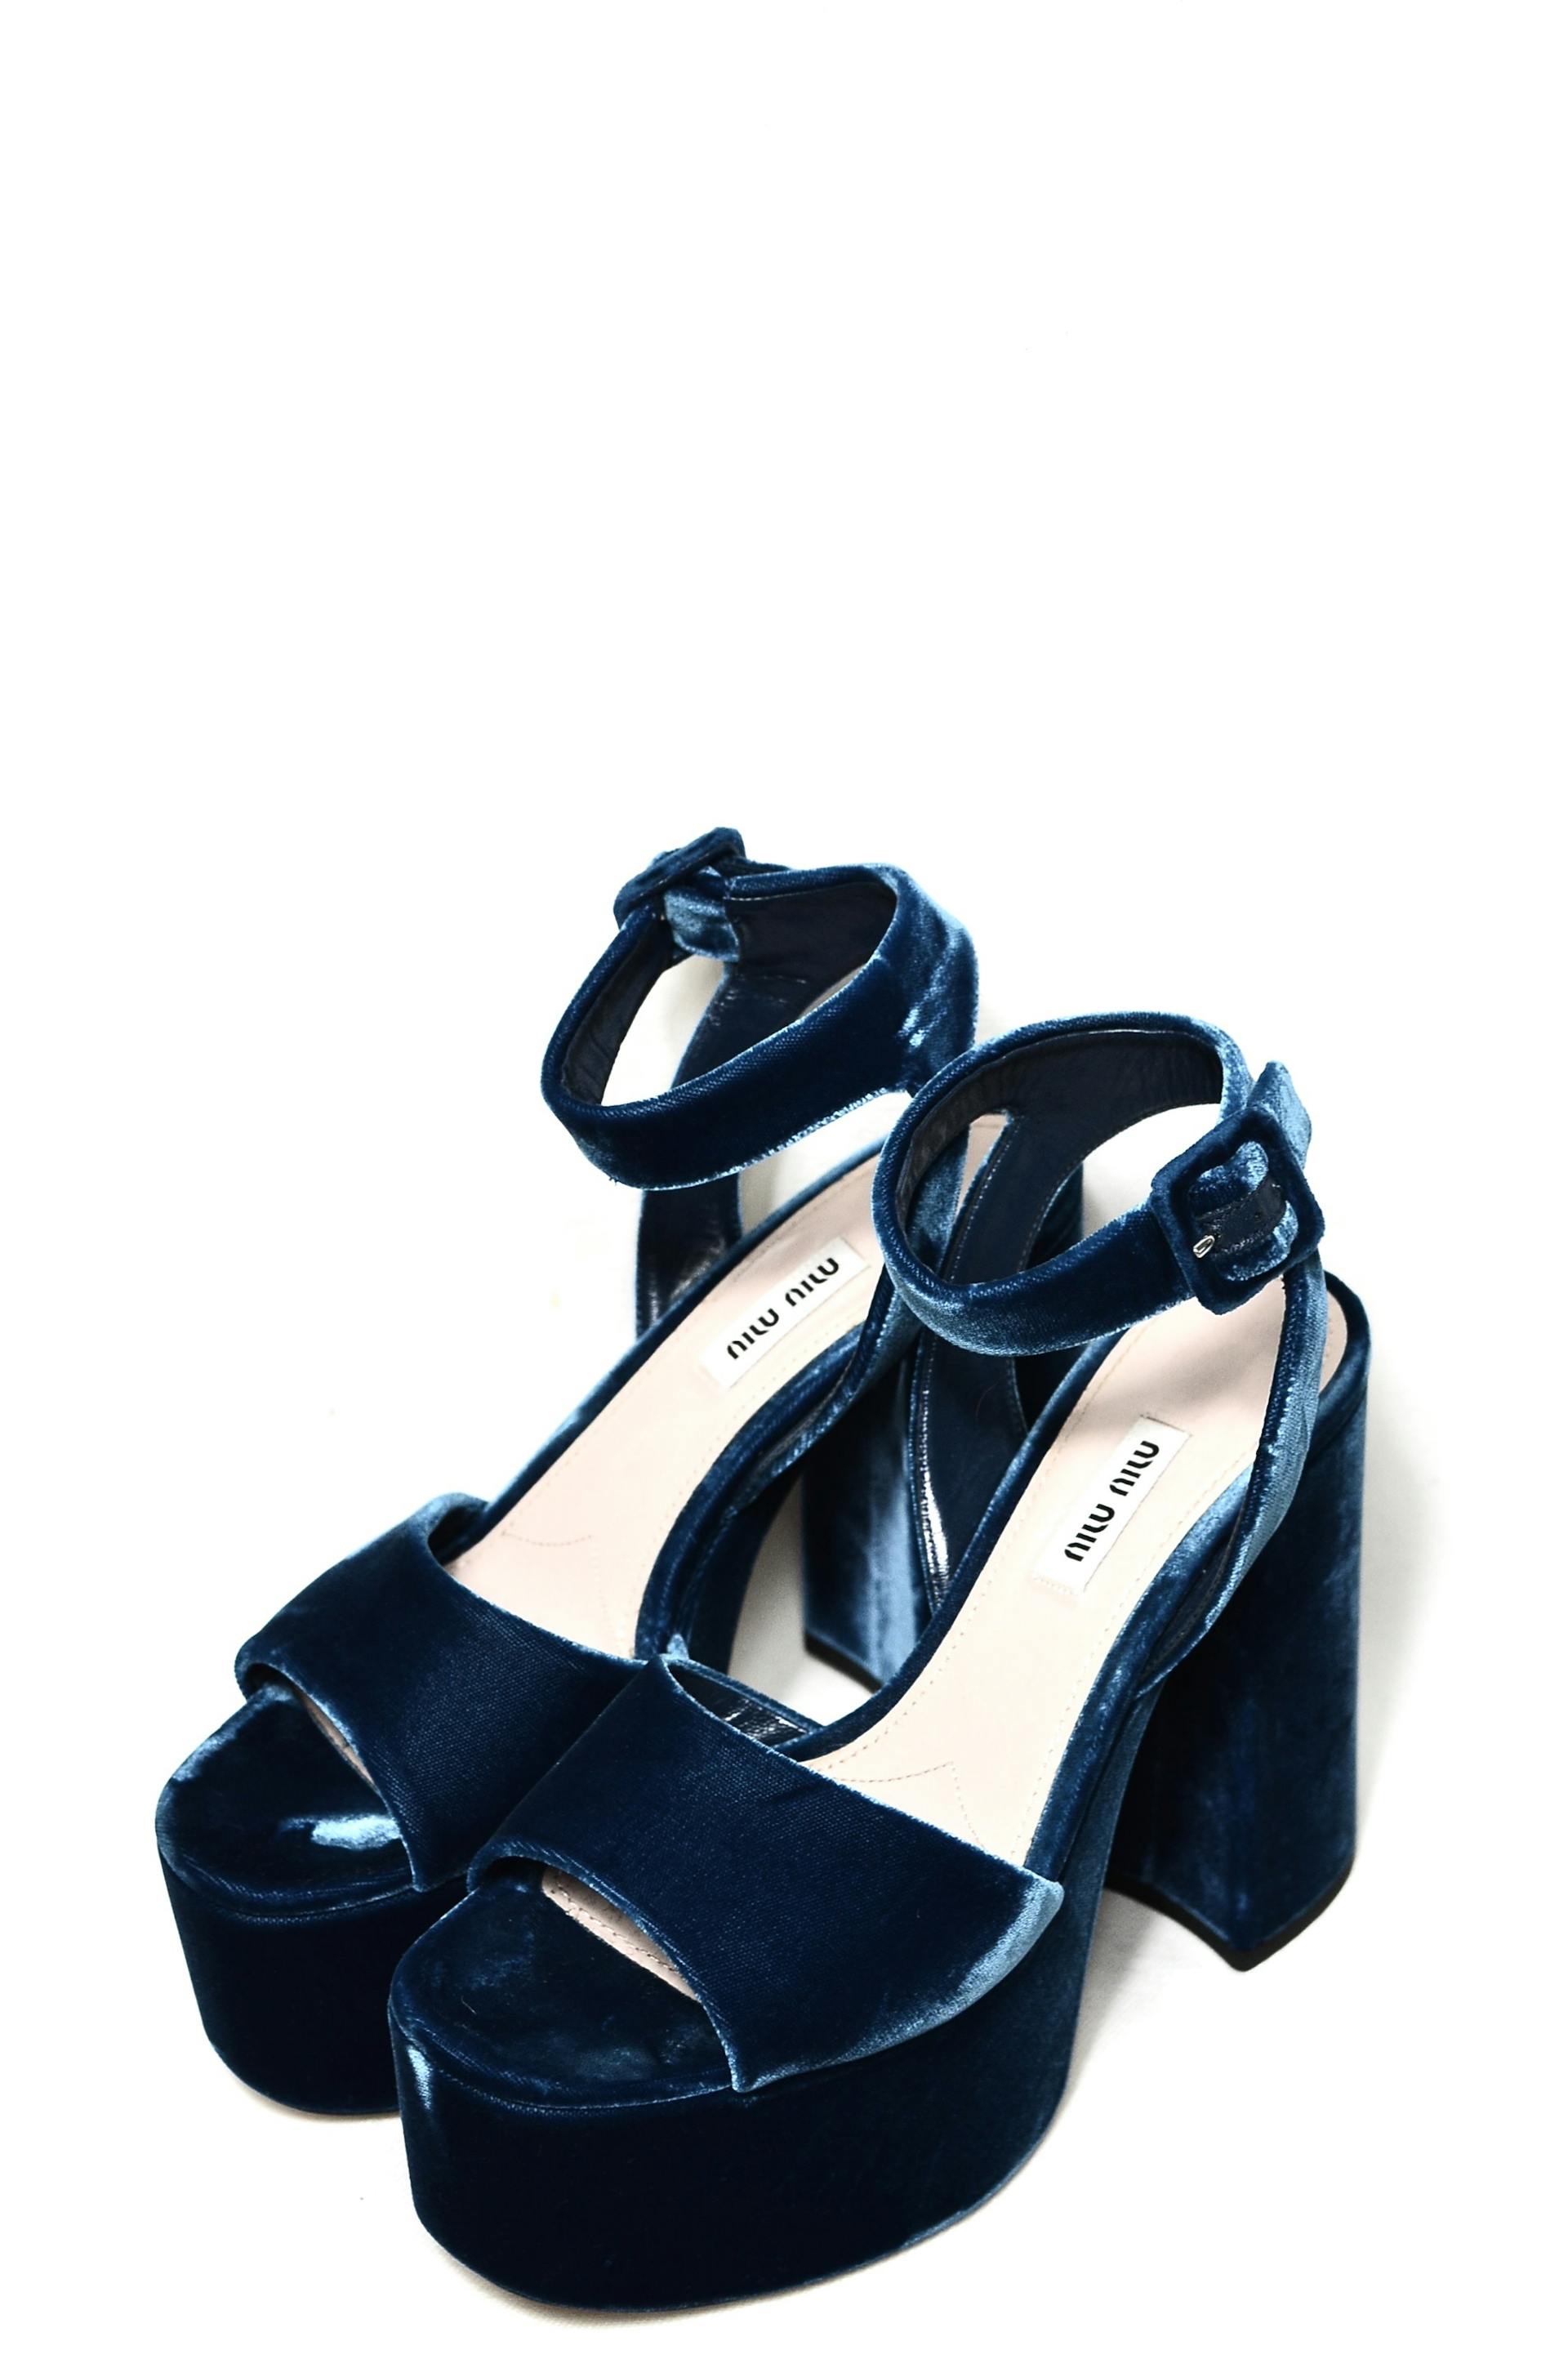 Une paire de chaussures en daim bleu | Source : Pexels